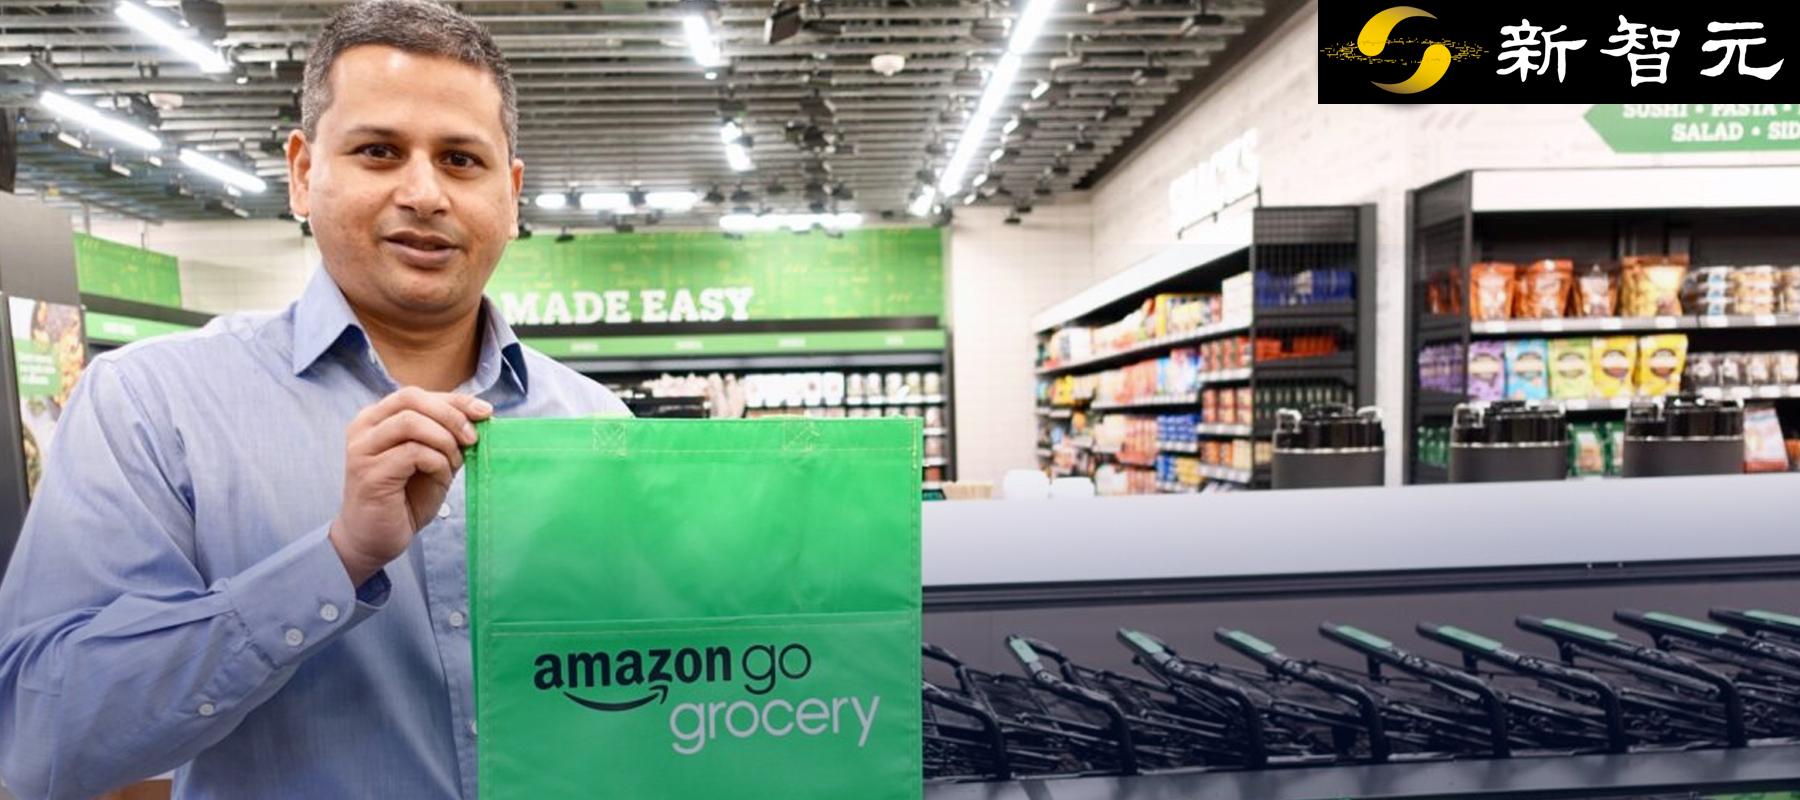 全球首个 无人大超市 开业 亚马逊秘密研发amazon Go超市上线 知乎